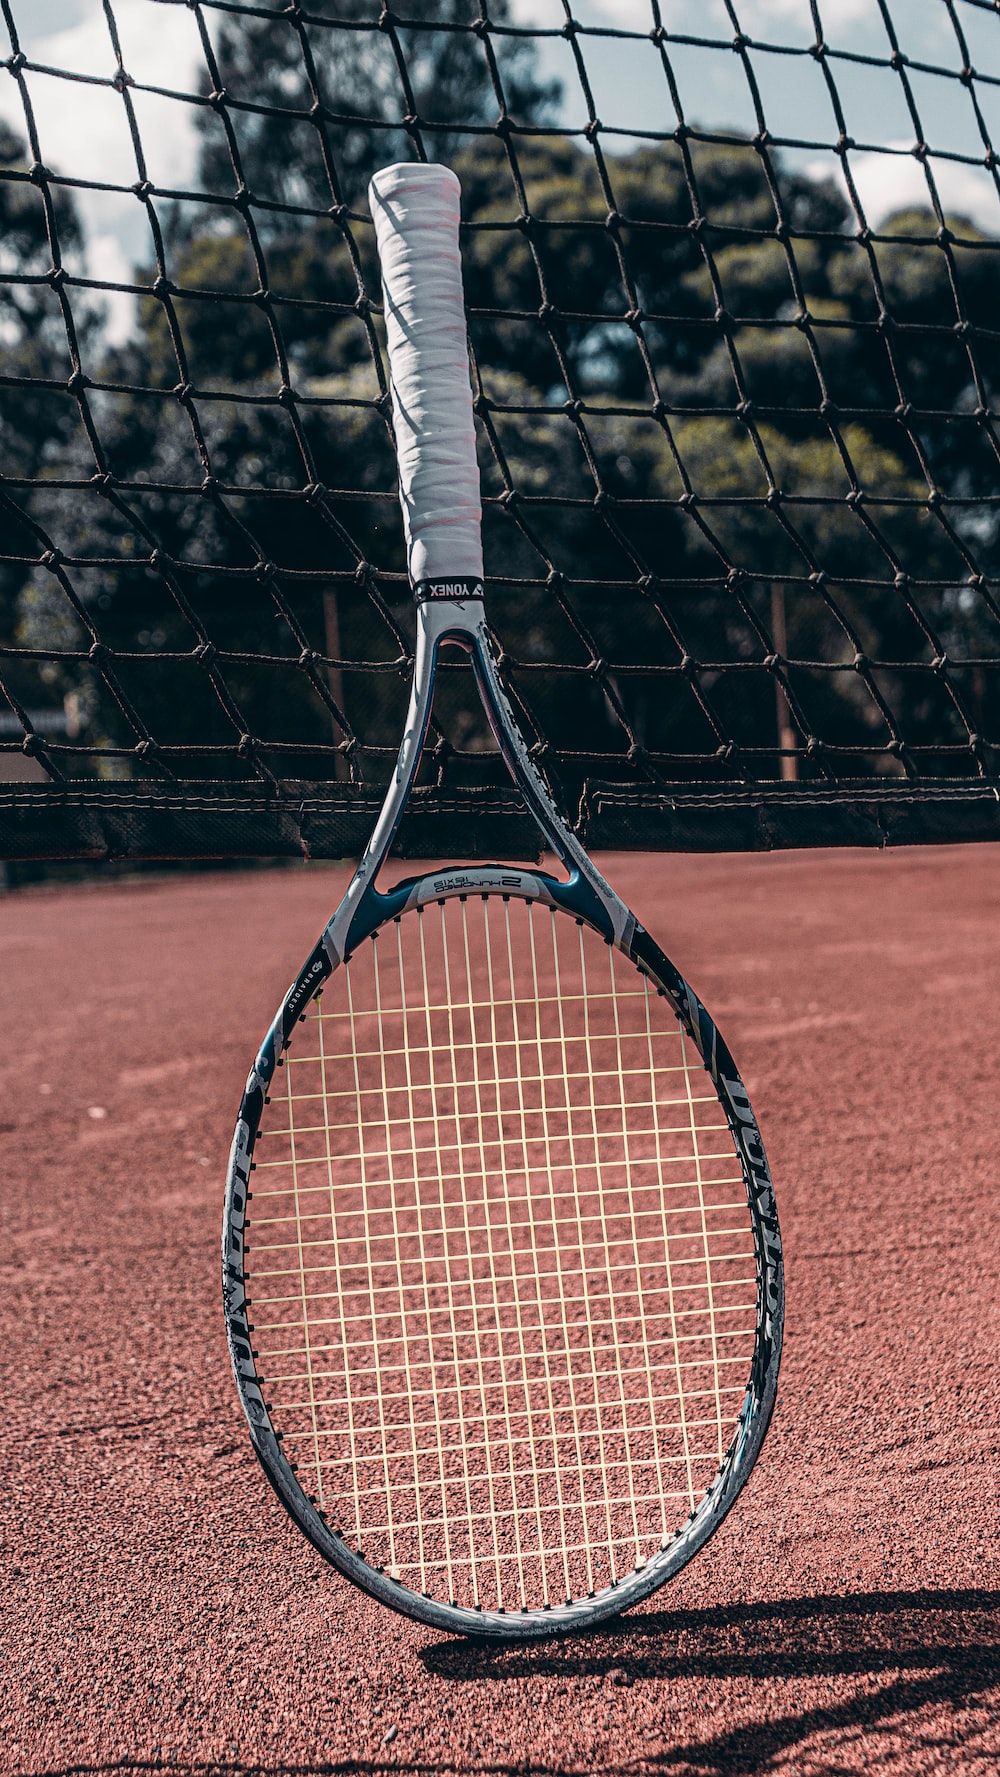 A tennis racket leaning against a tennis net - Tennis